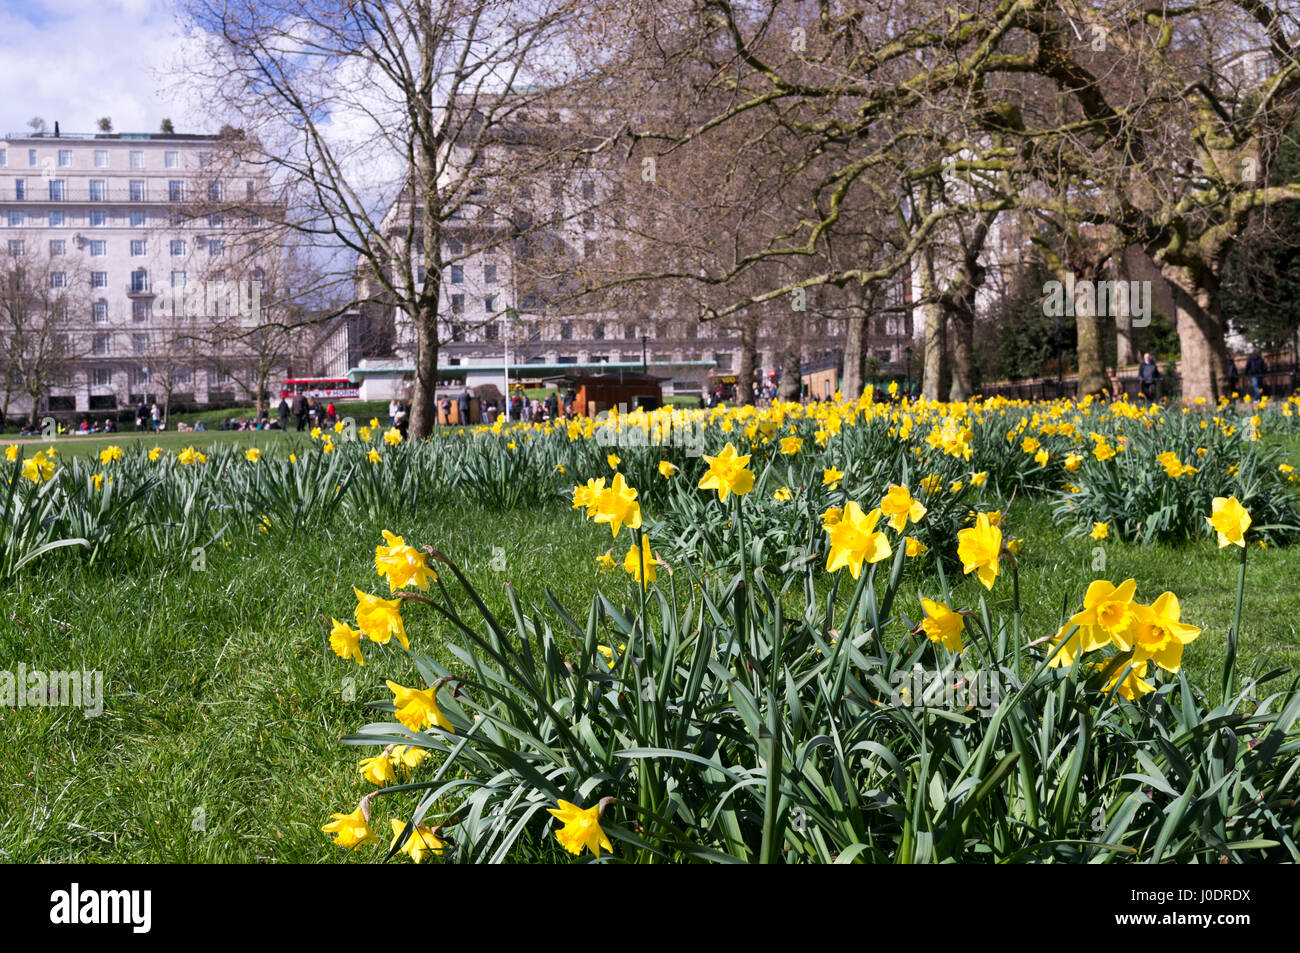 Un champ de tulipes jaunes fleurissent au St James's Park à Londres, l'un des grands espaces verts à proximité de Buckingham Palace Banque D'Images